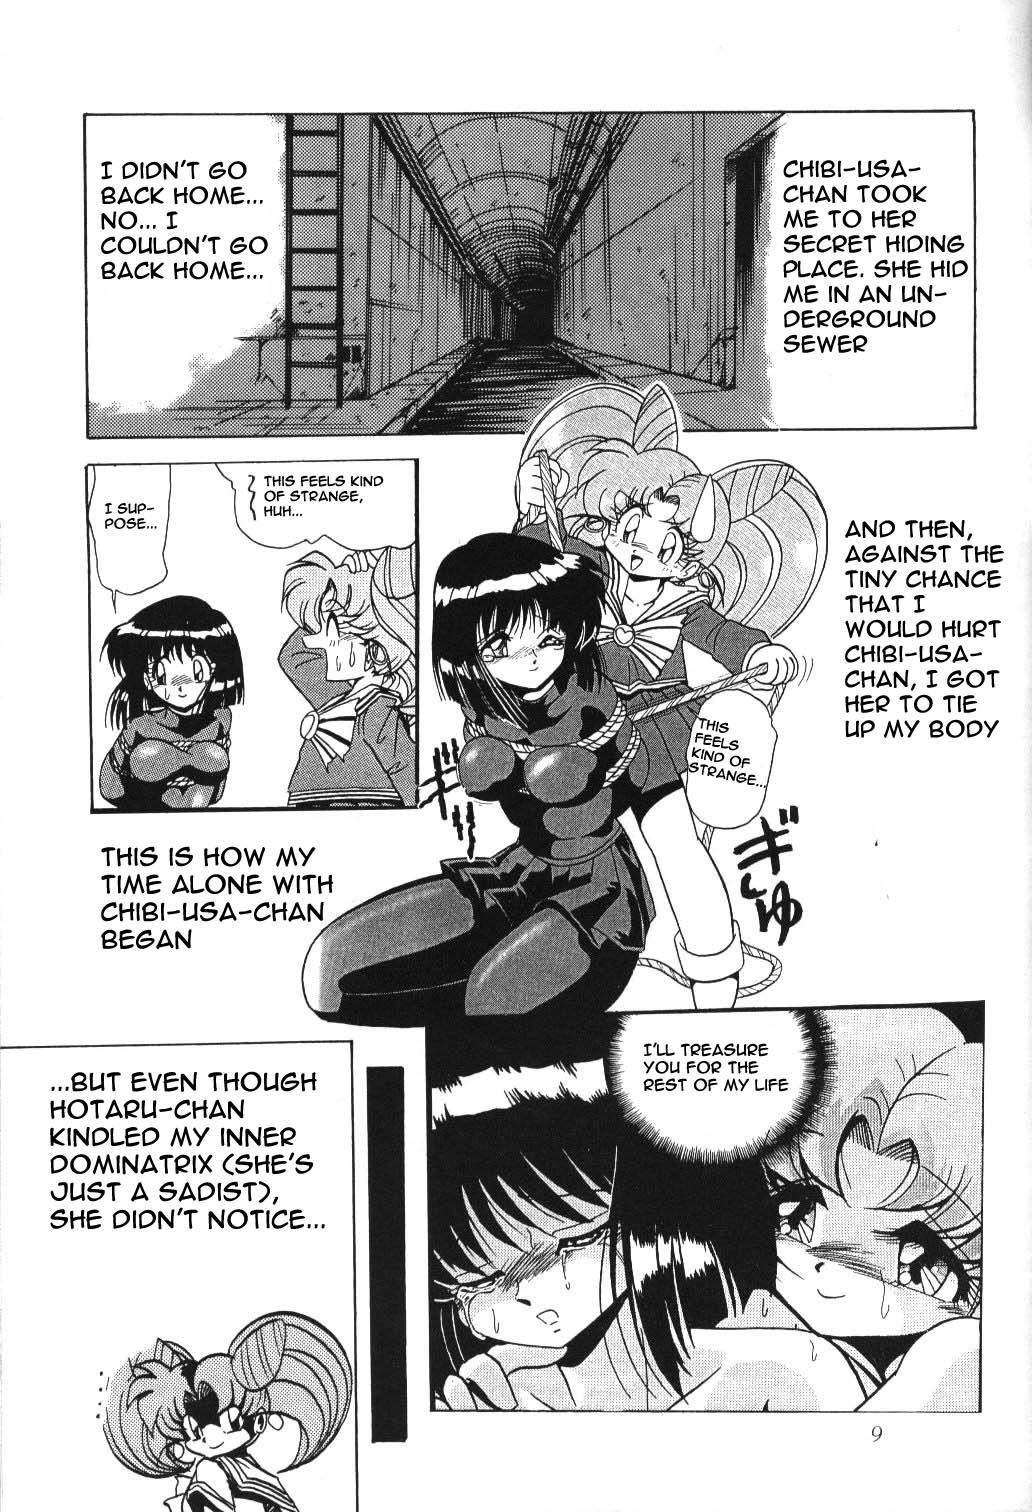 Culo Grande Silent Saturn 2 - Sailor moon Milk - Page 7